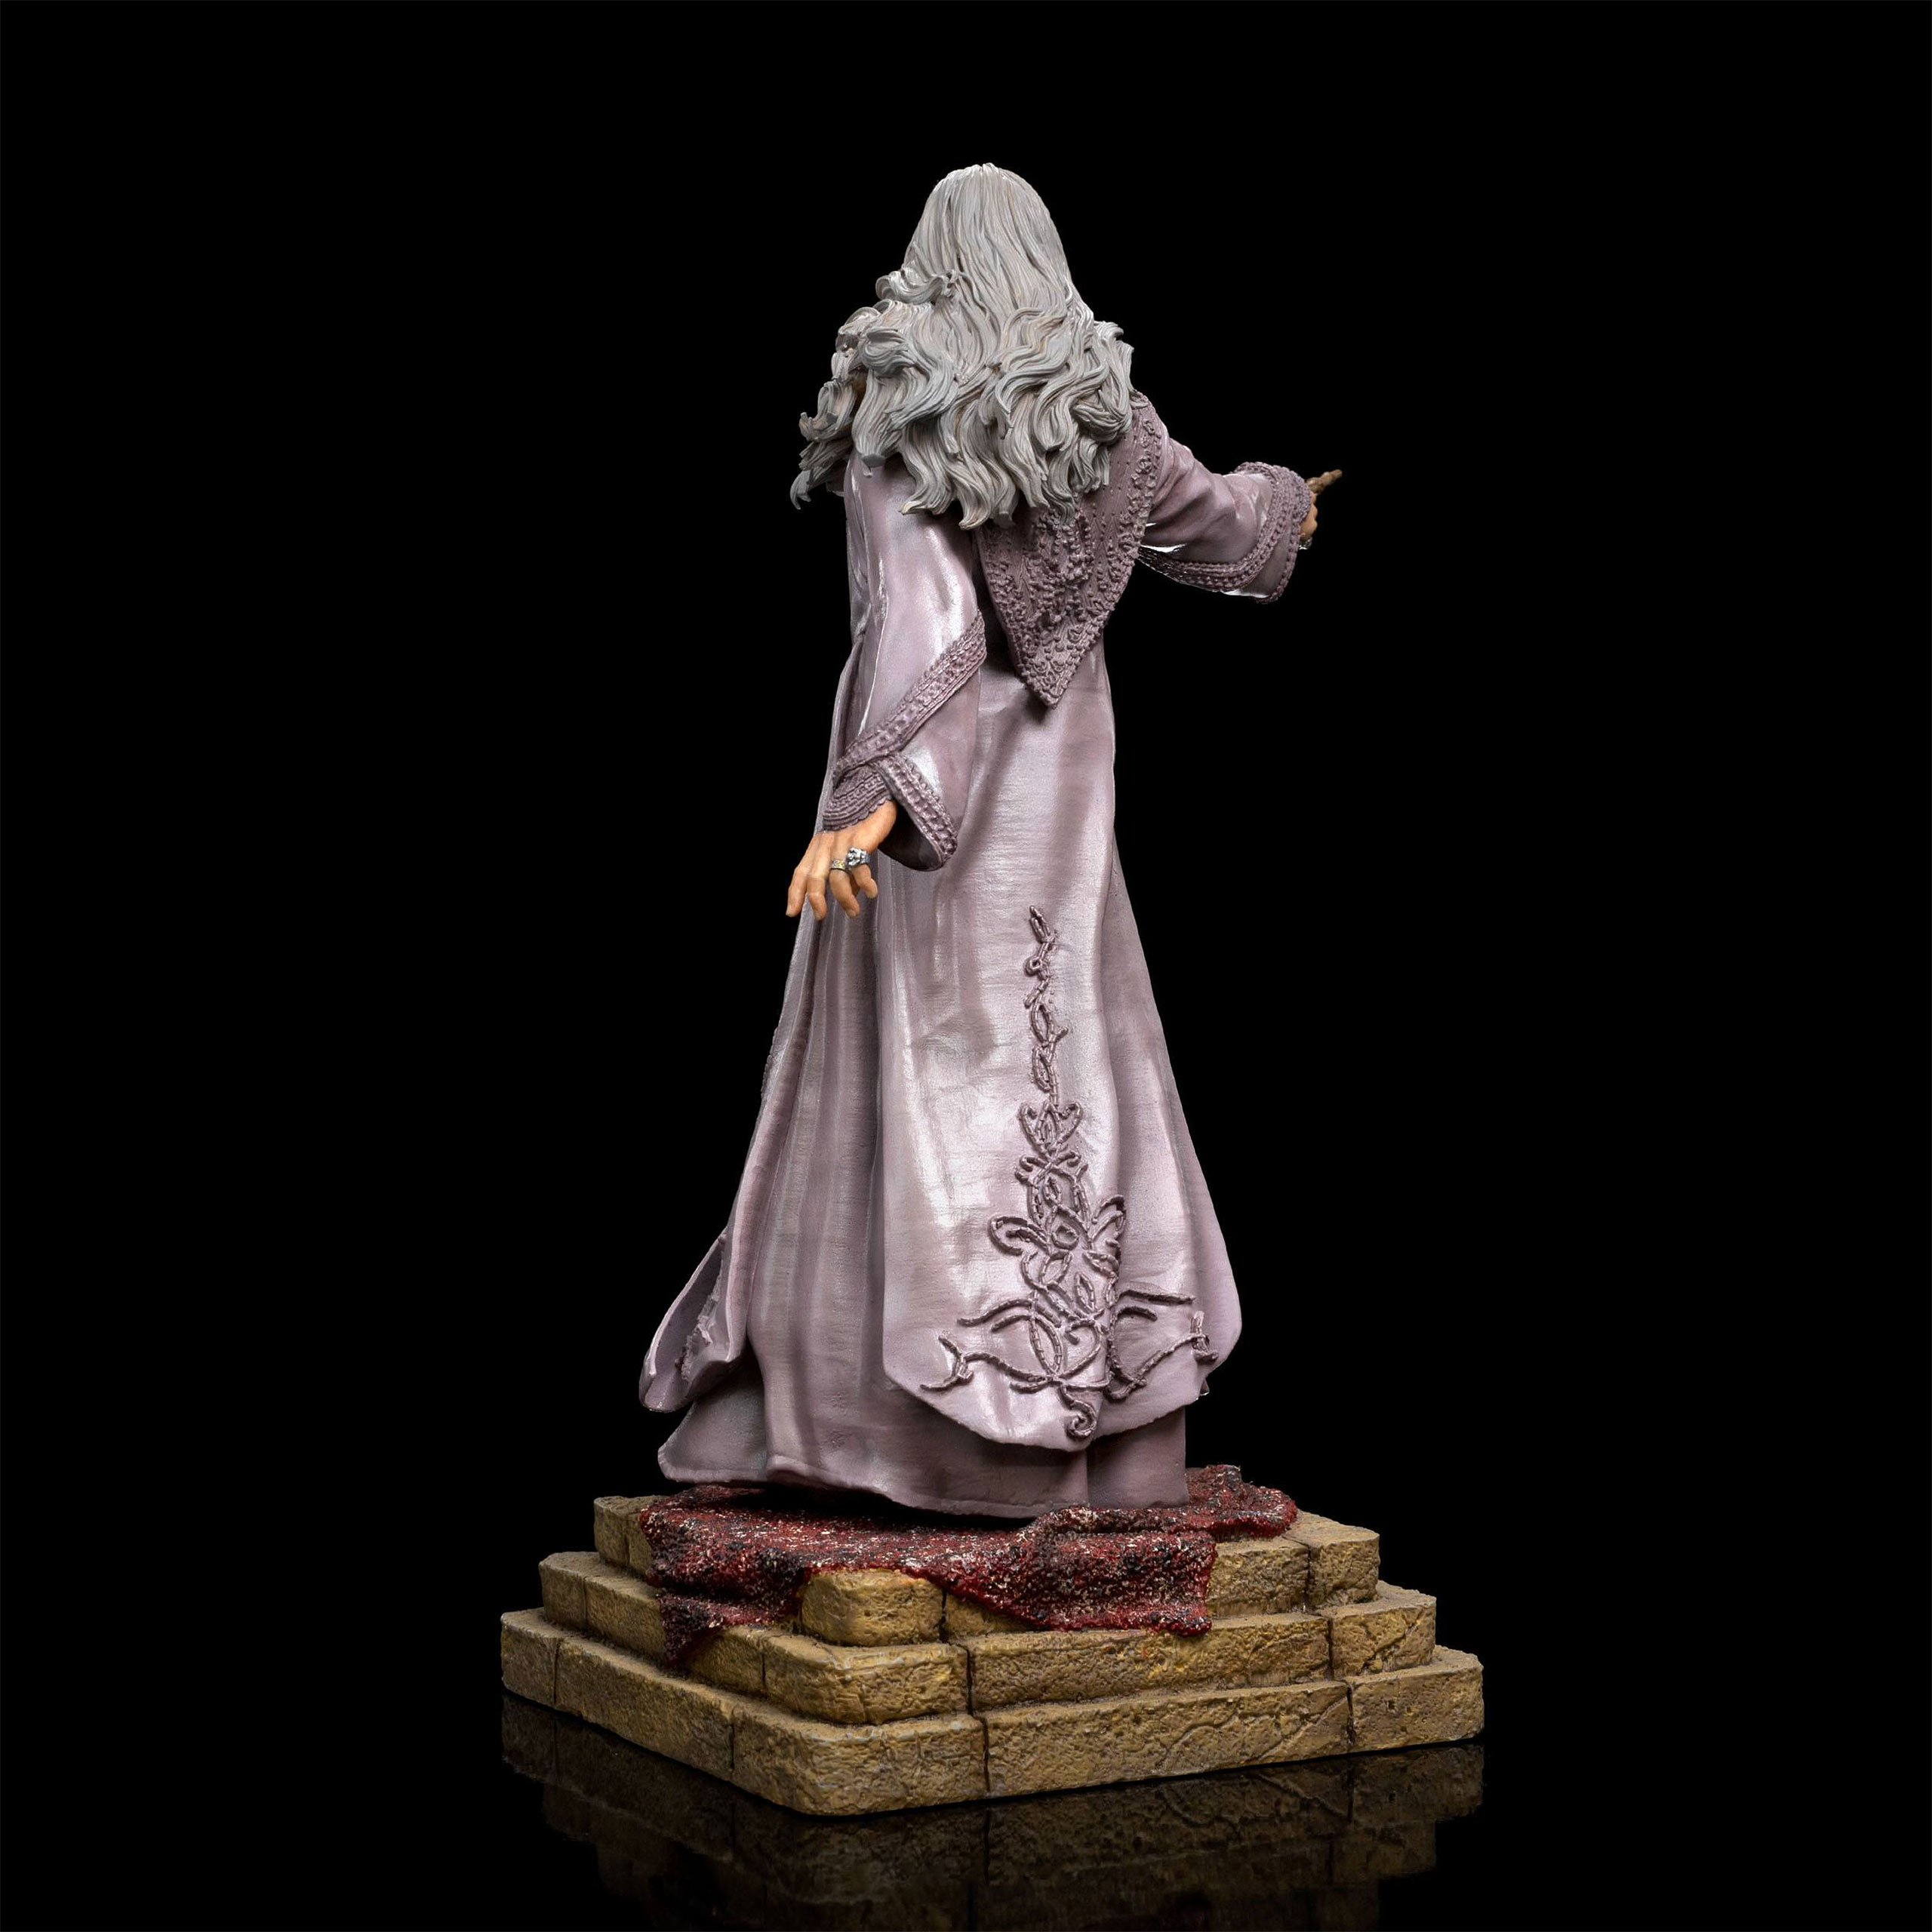 Harry Potter - Albus Dumbledore Art Scale Deluxe Statue 1:10